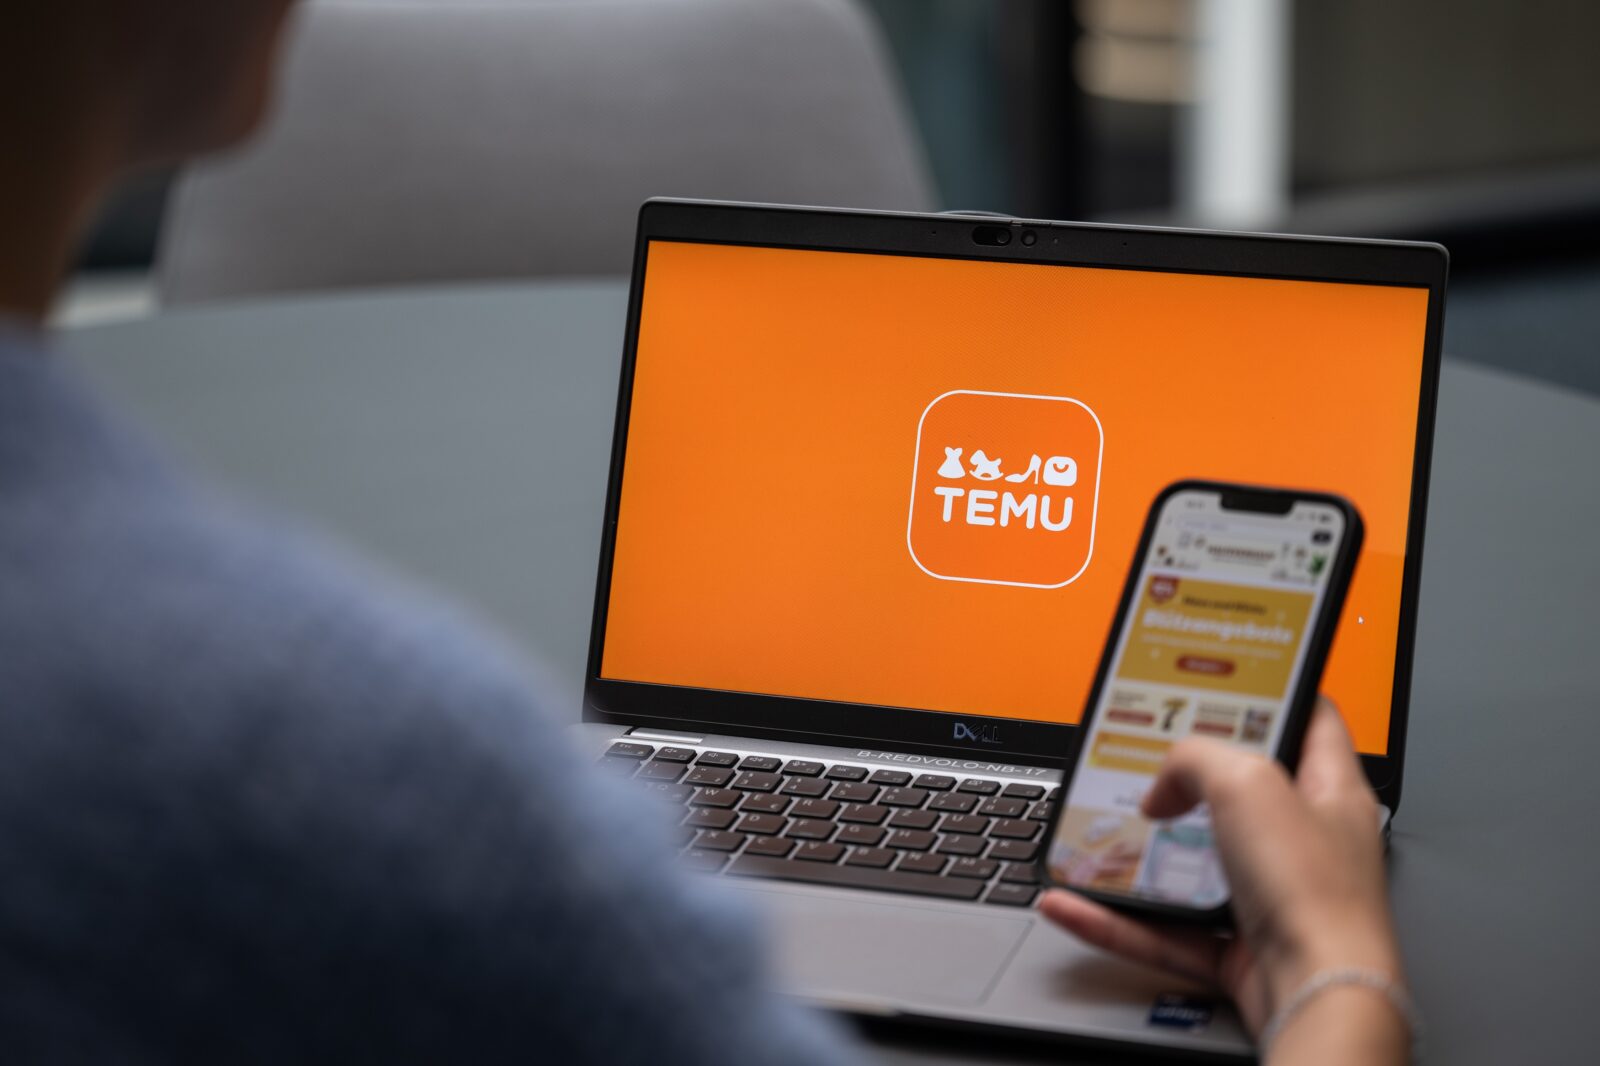 Colin Huang: Auf einem Laptop ist das Temu-Symbol zu sehen